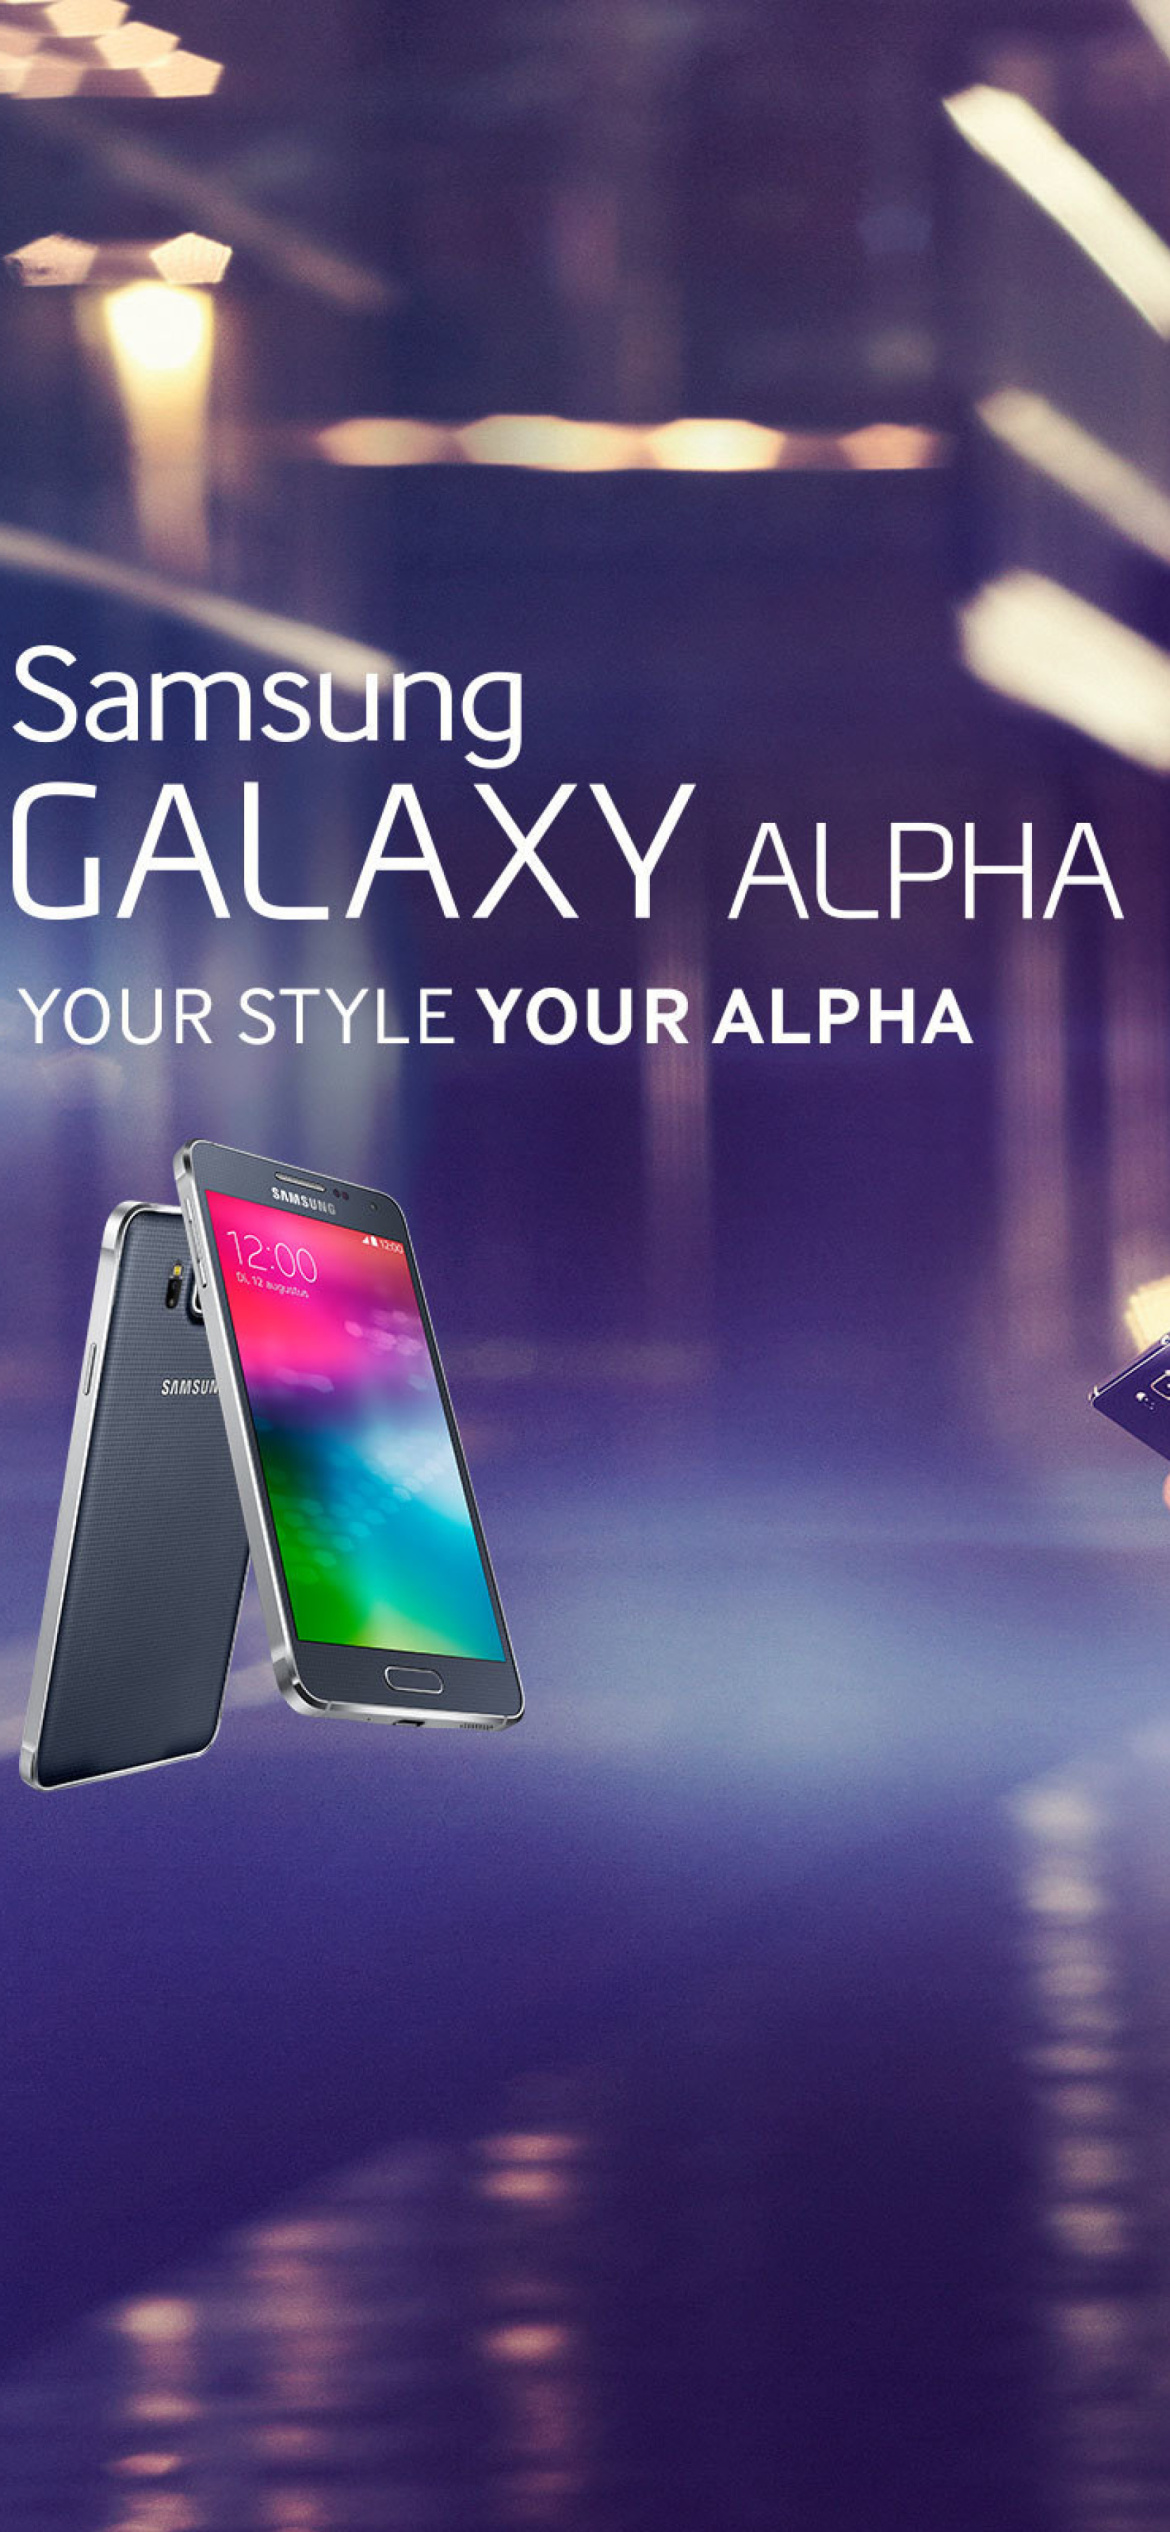 Samsung Galaxy Alpha Advertisement with Doutzen Kroes screenshot #1 1170x2532